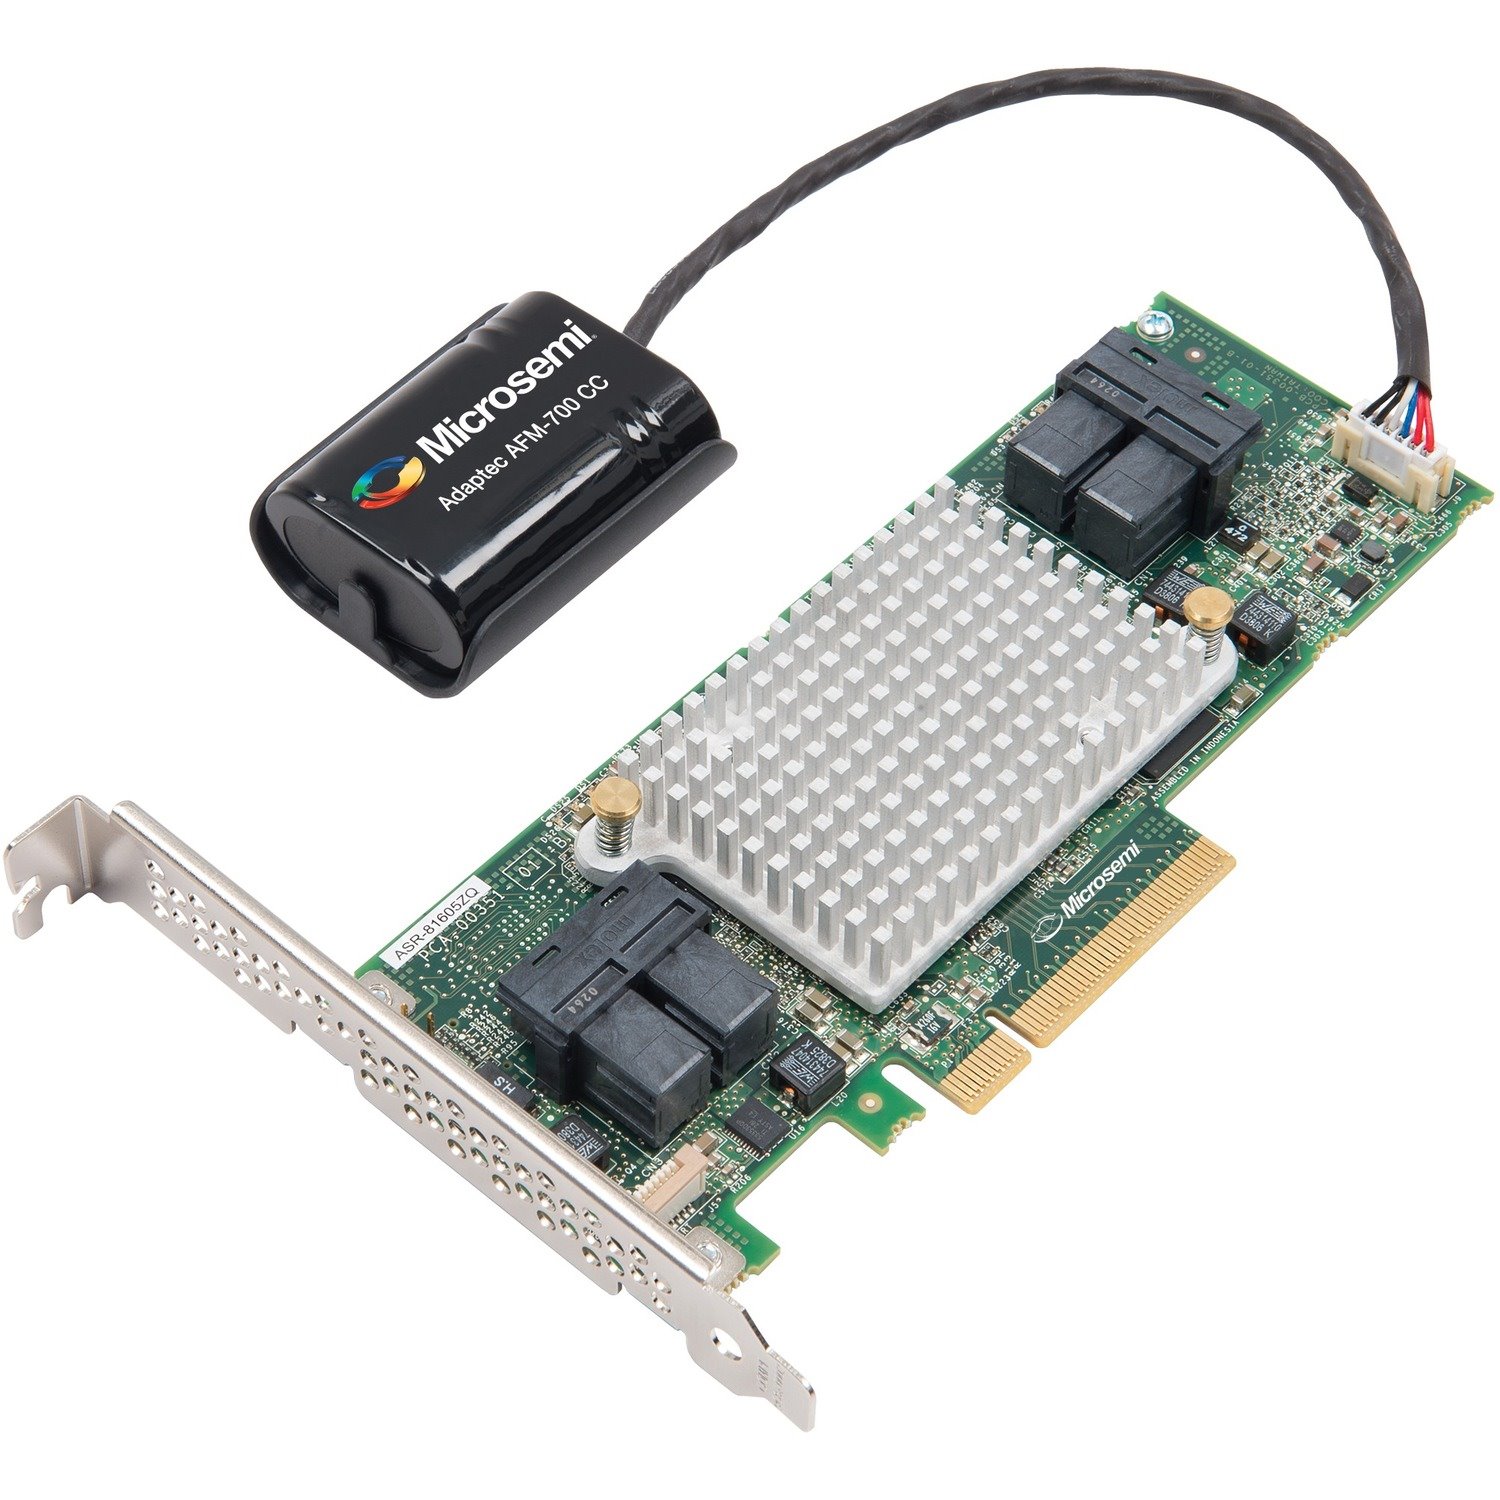 Microchip Adaptec 81605Z 12 Gbps Gen 3 SAS/SATA RAID Adapter